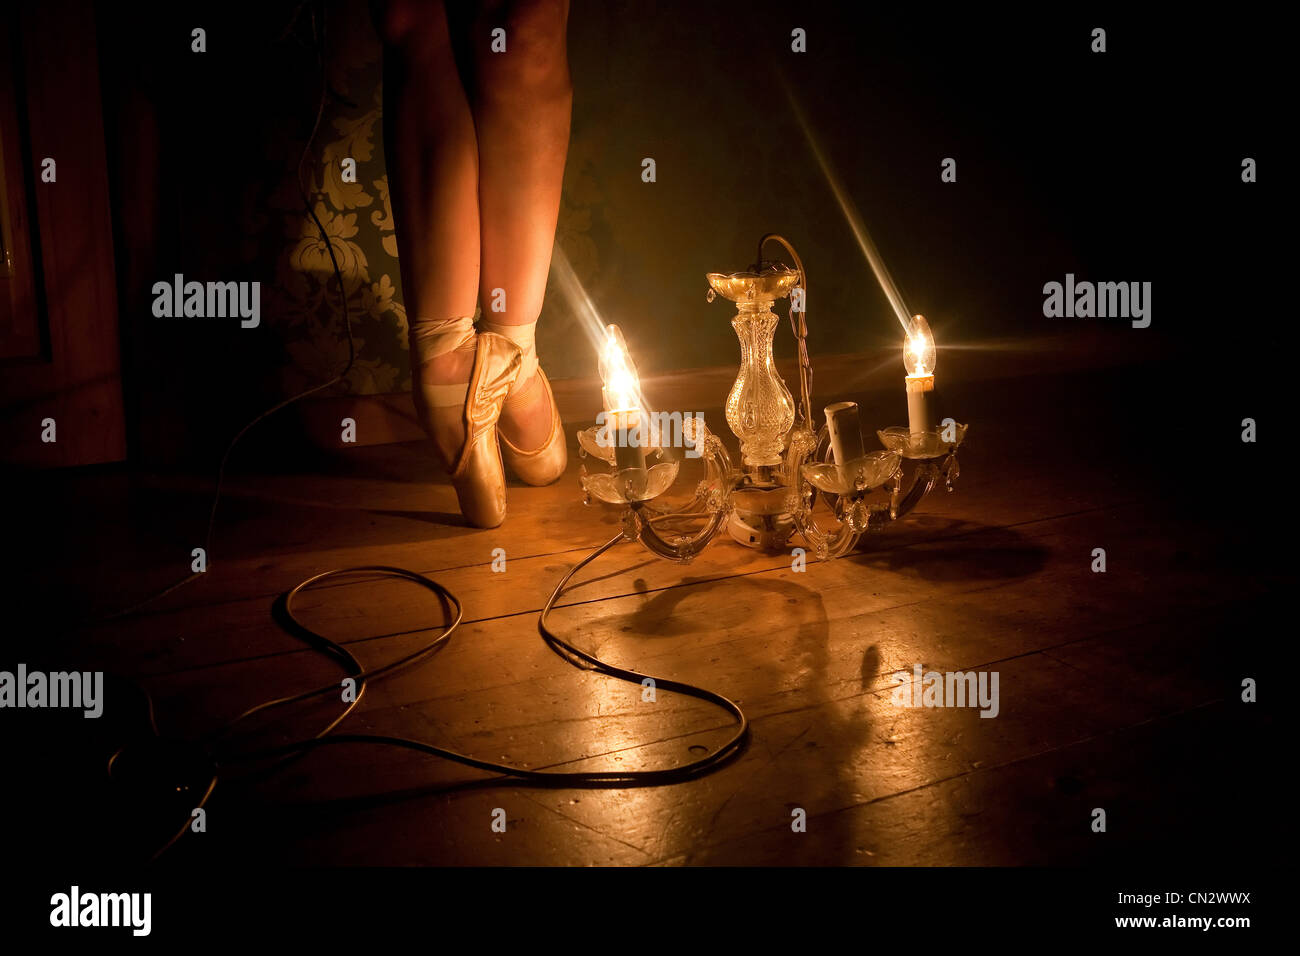 Feet of ballerina illuminated by chandelier light Stock Photo